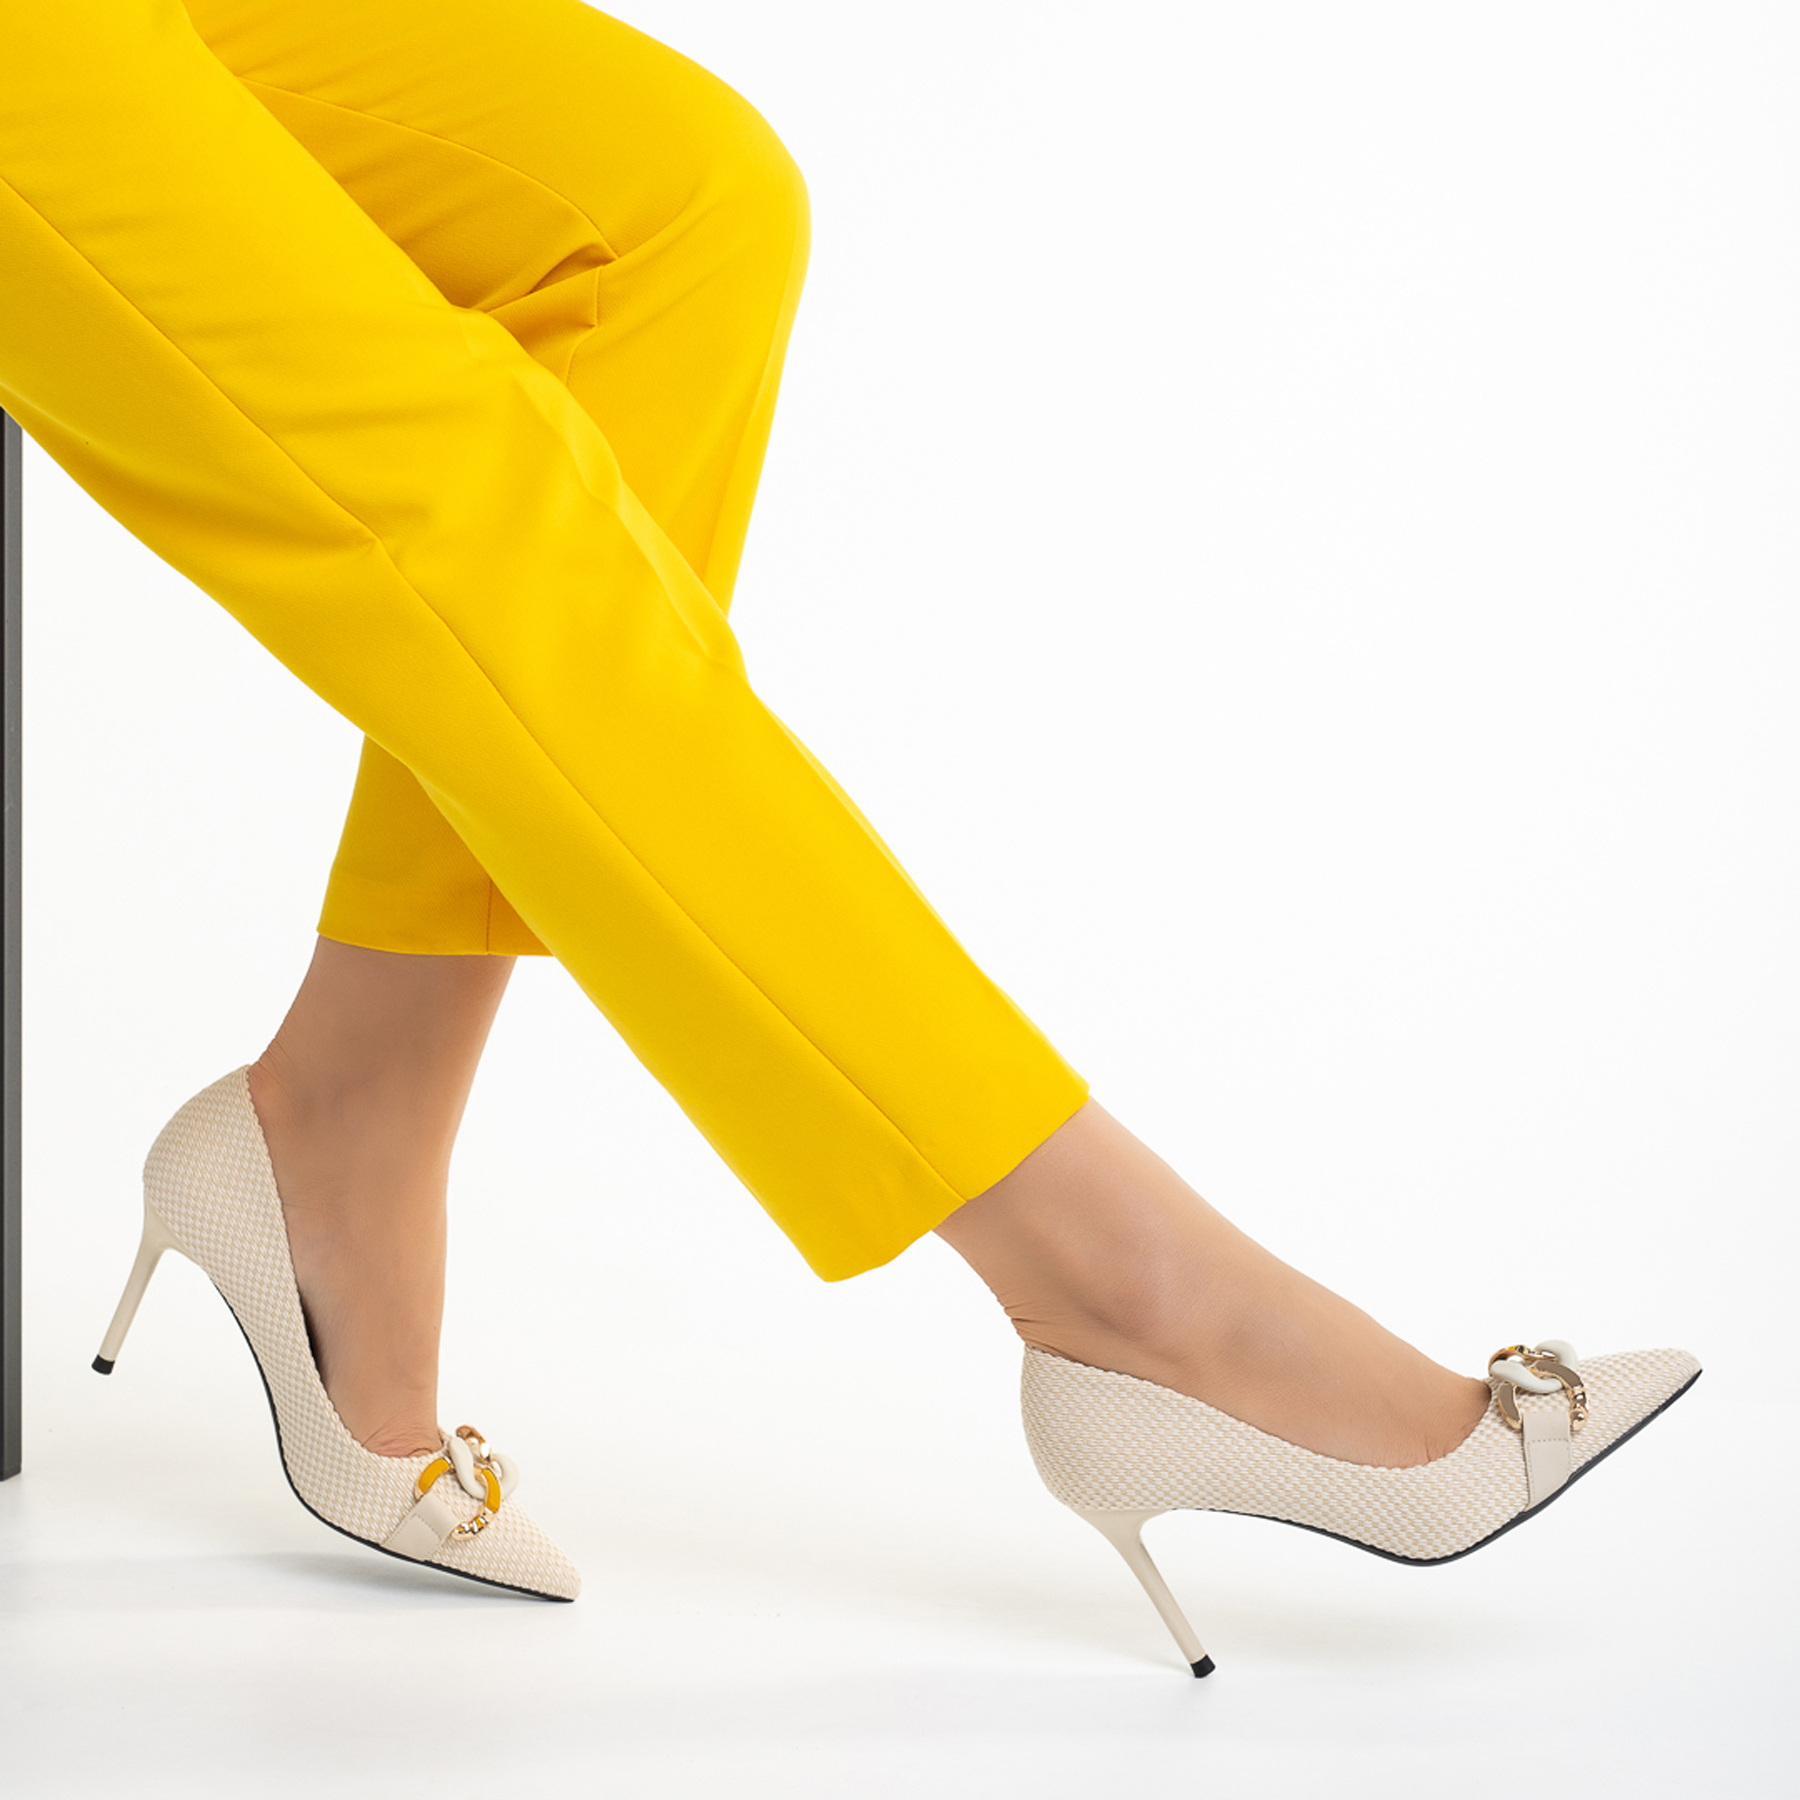 Rosette bézs női cipő, textil anyagból készült - Kalapod.hu